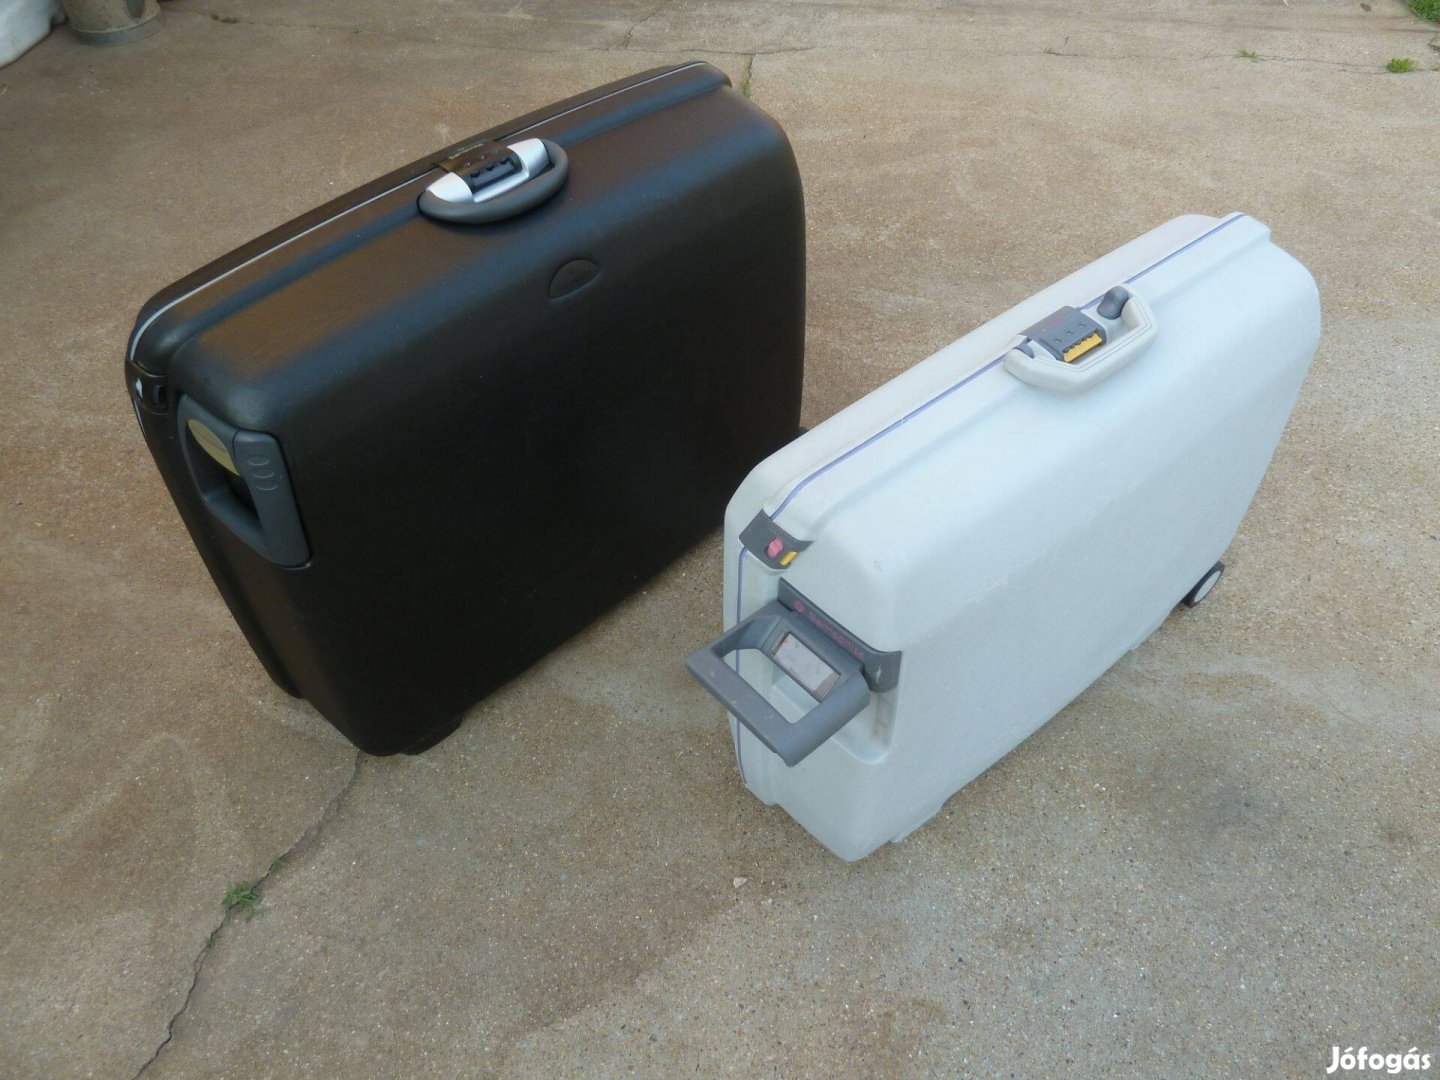 Samsonite műanyag utazó bőrönd eladó. Húzható törhetetlen (ideális